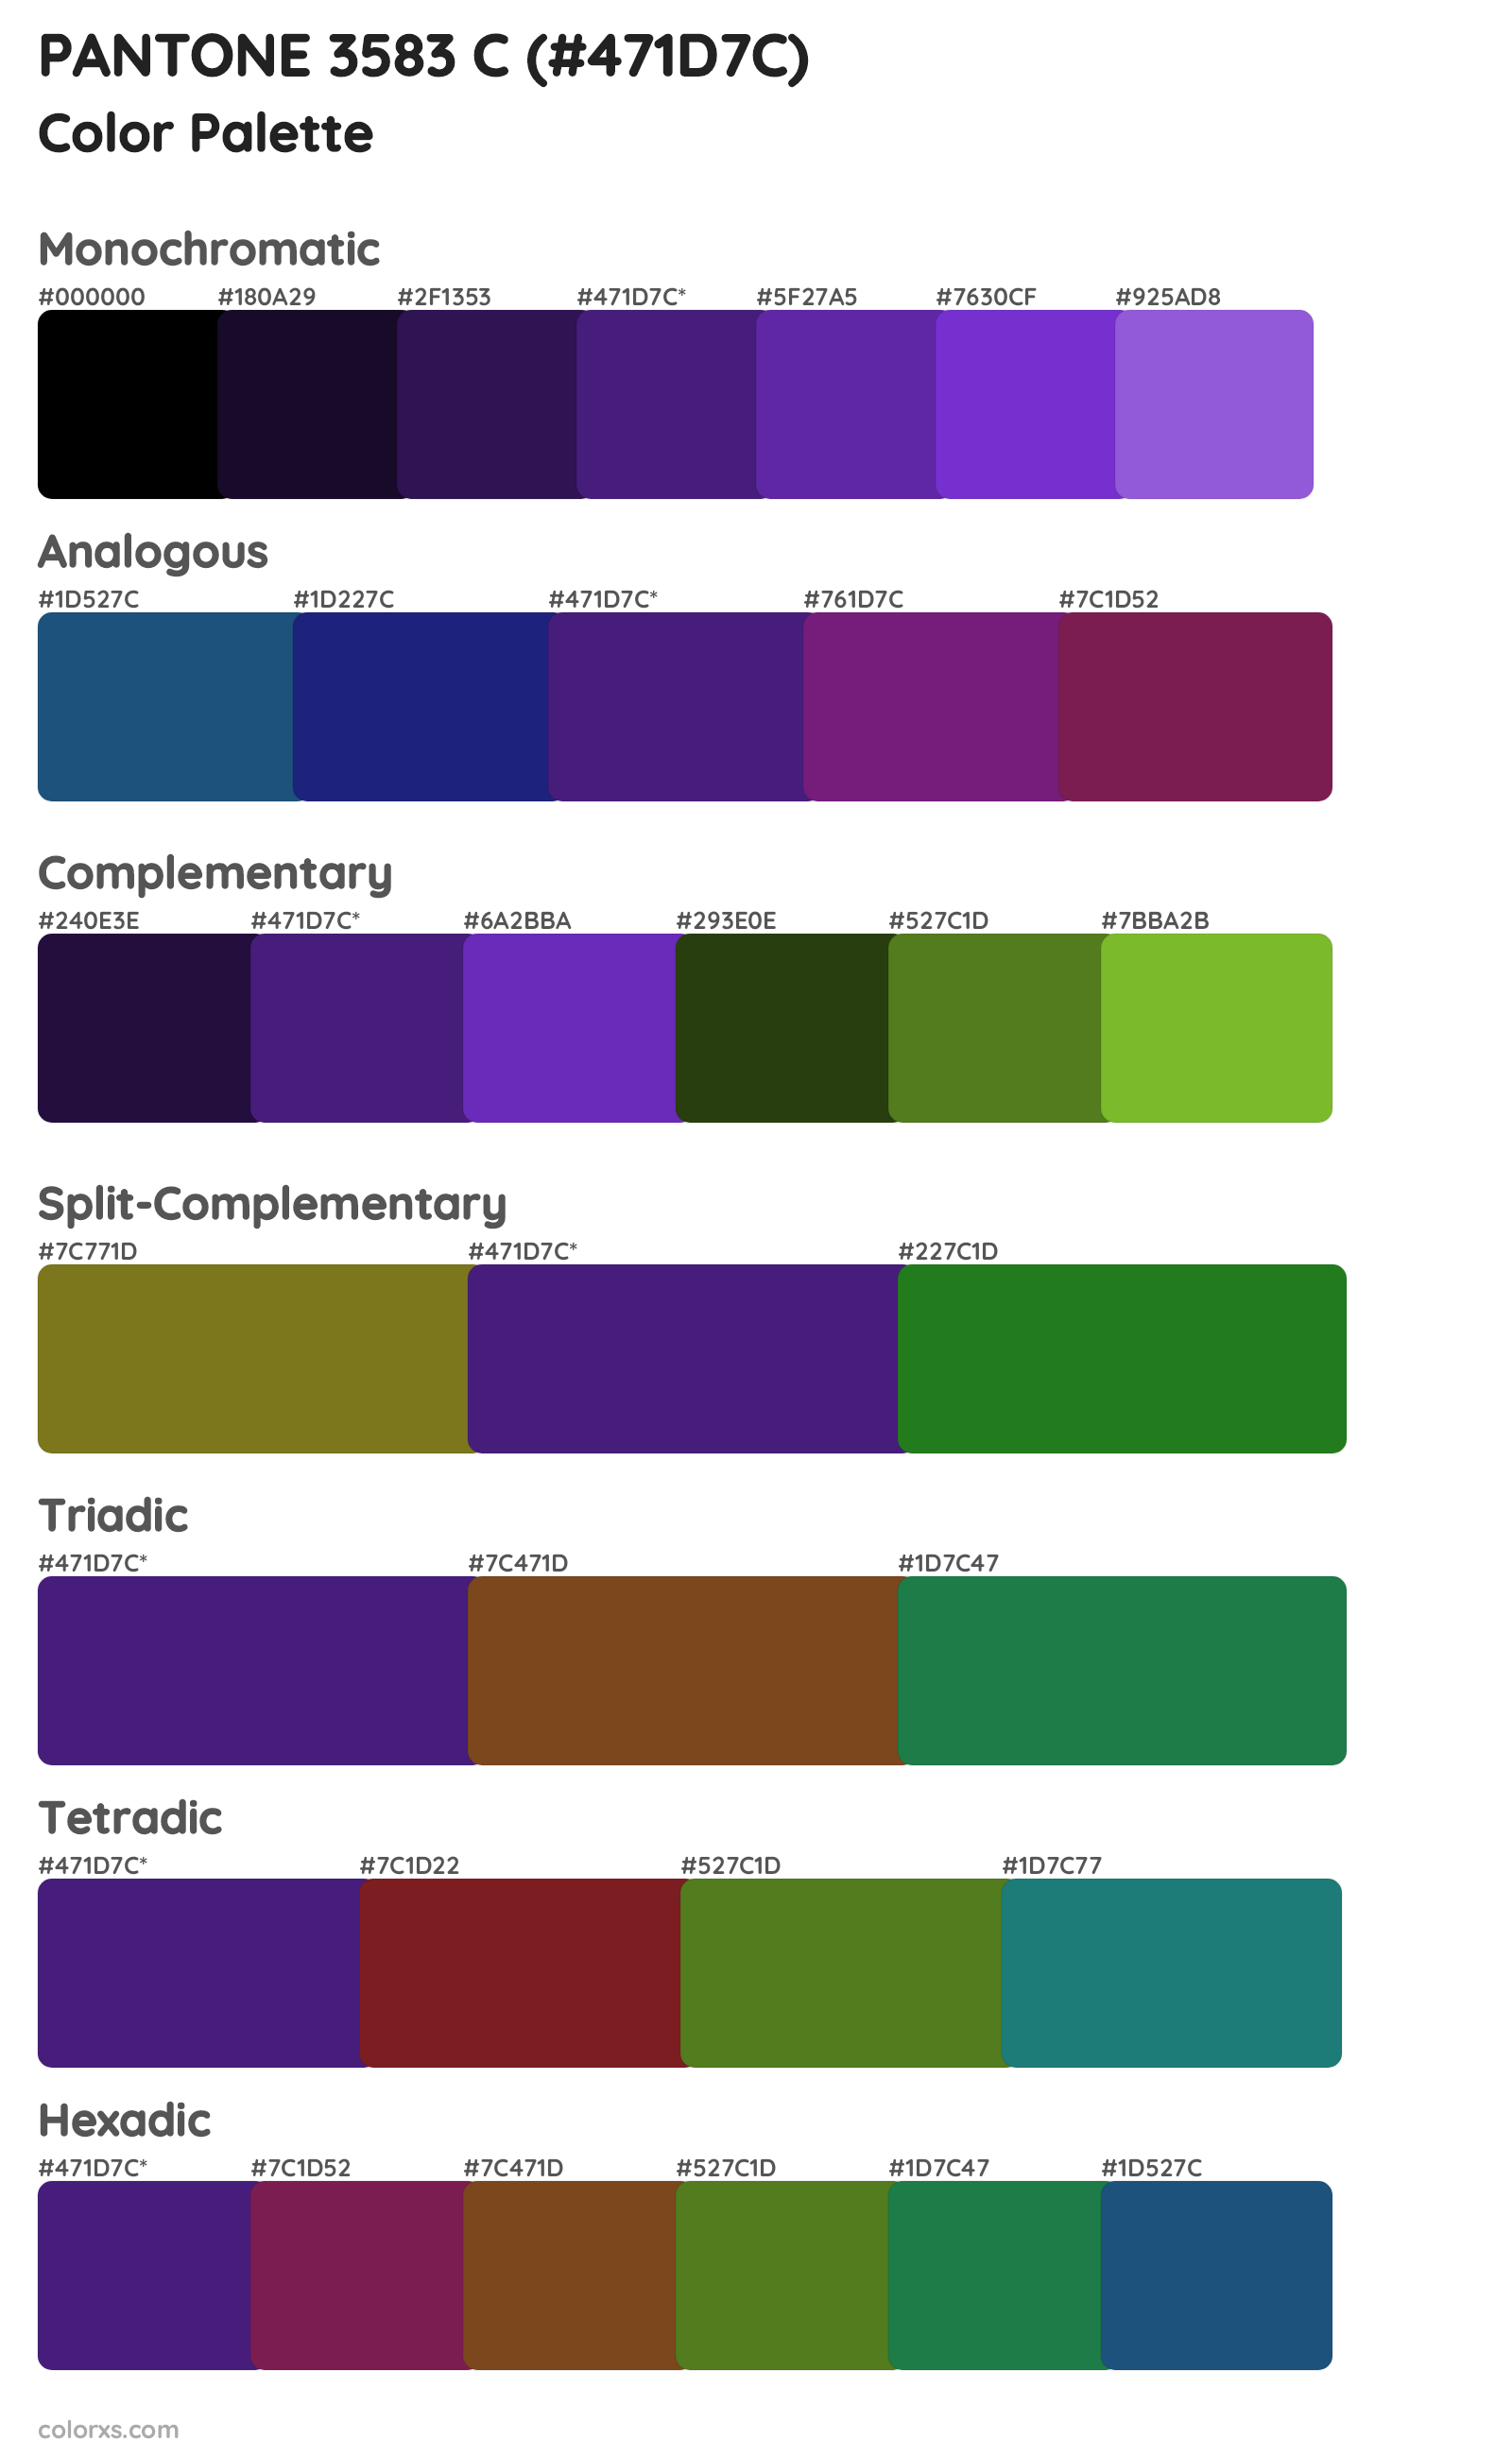 PANTONE 3583 C Color Scheme Palettes